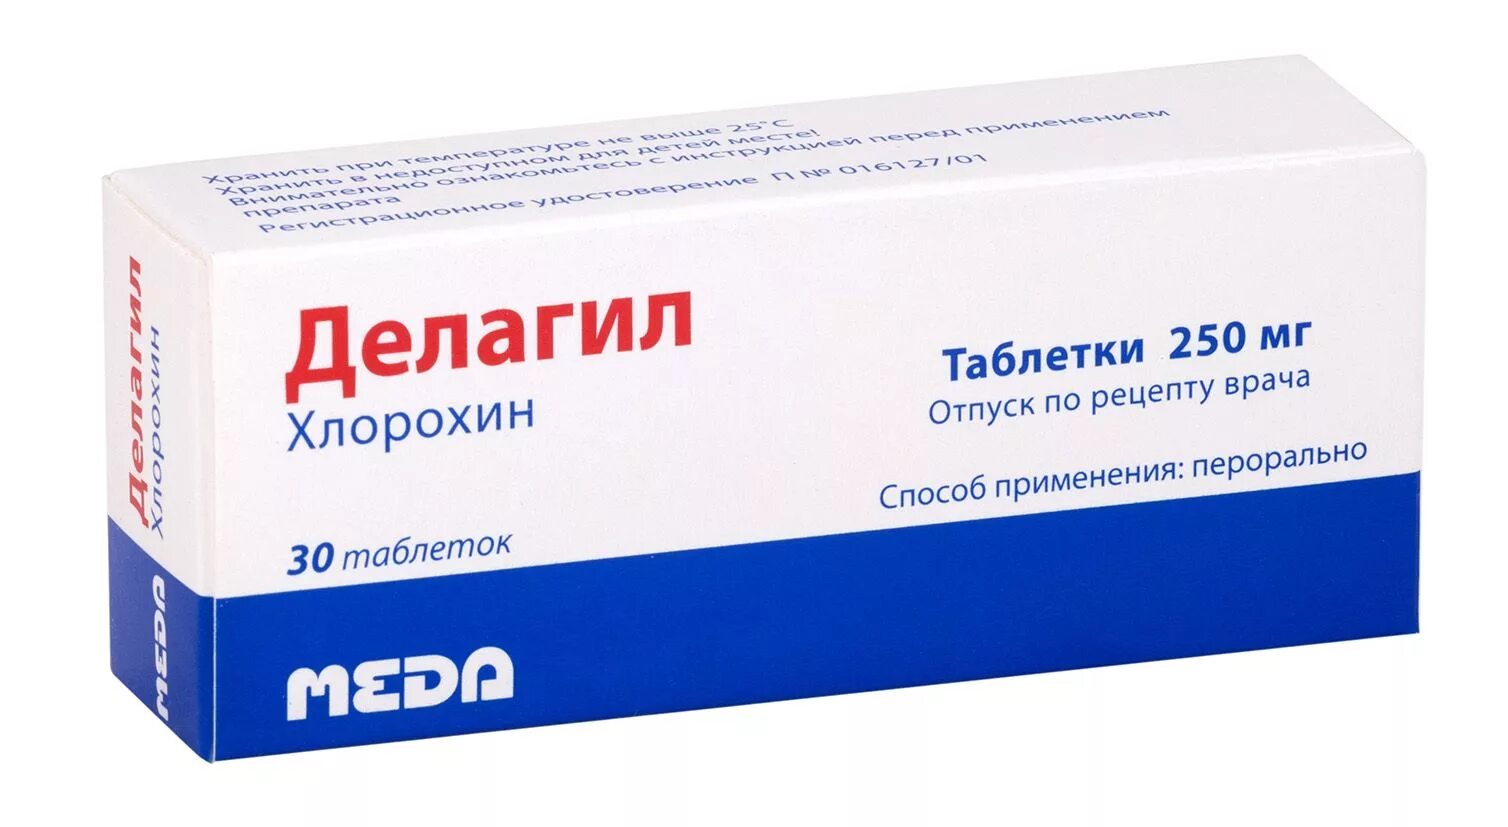 Лечение коронавируса человека препараты. Делагил 250 мг. Хлорохин Делагил. Таблетки от малярии Делагил. Противомалярийный препарат хлорохин.